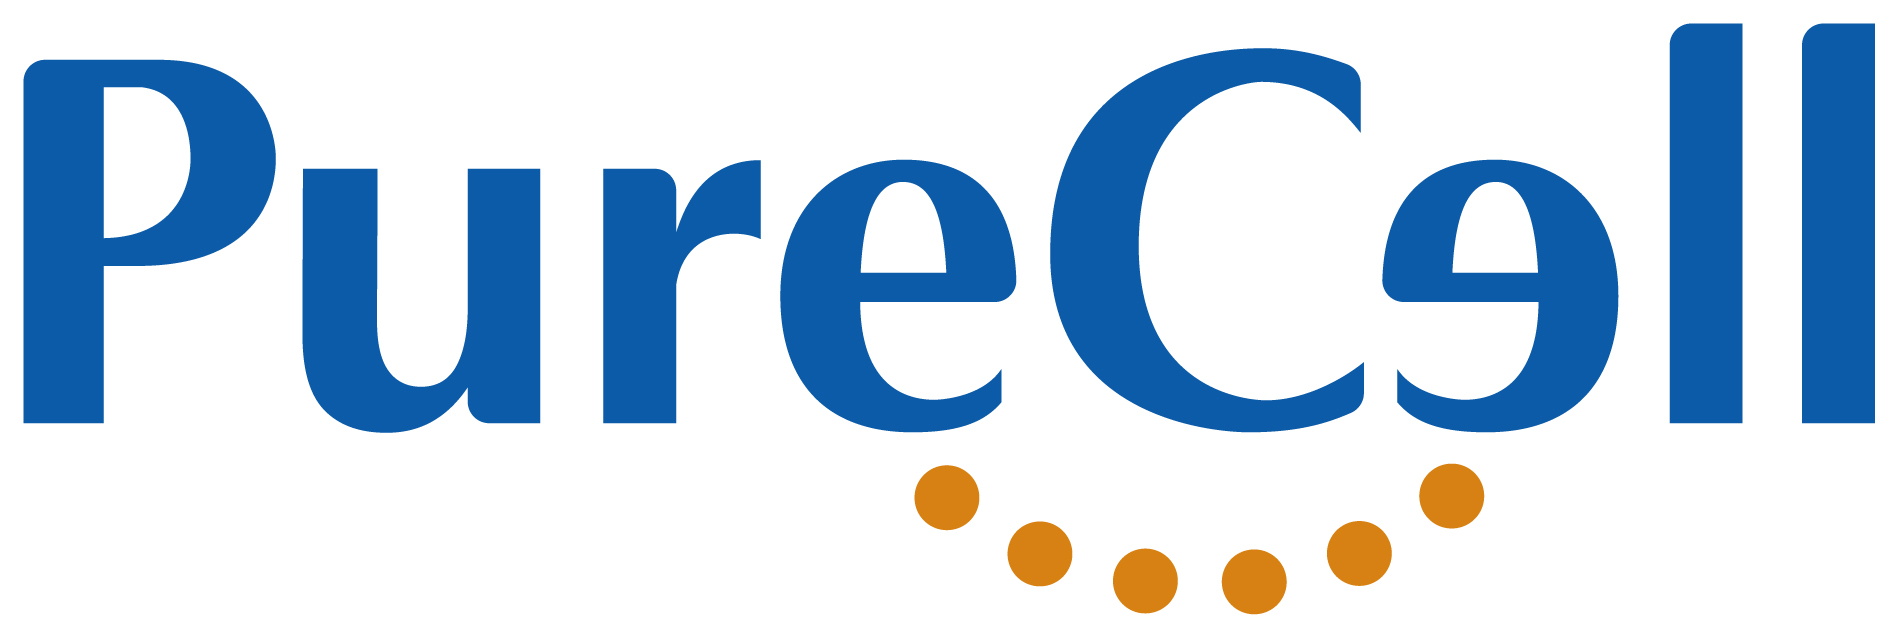 株式会社PureCell_logo